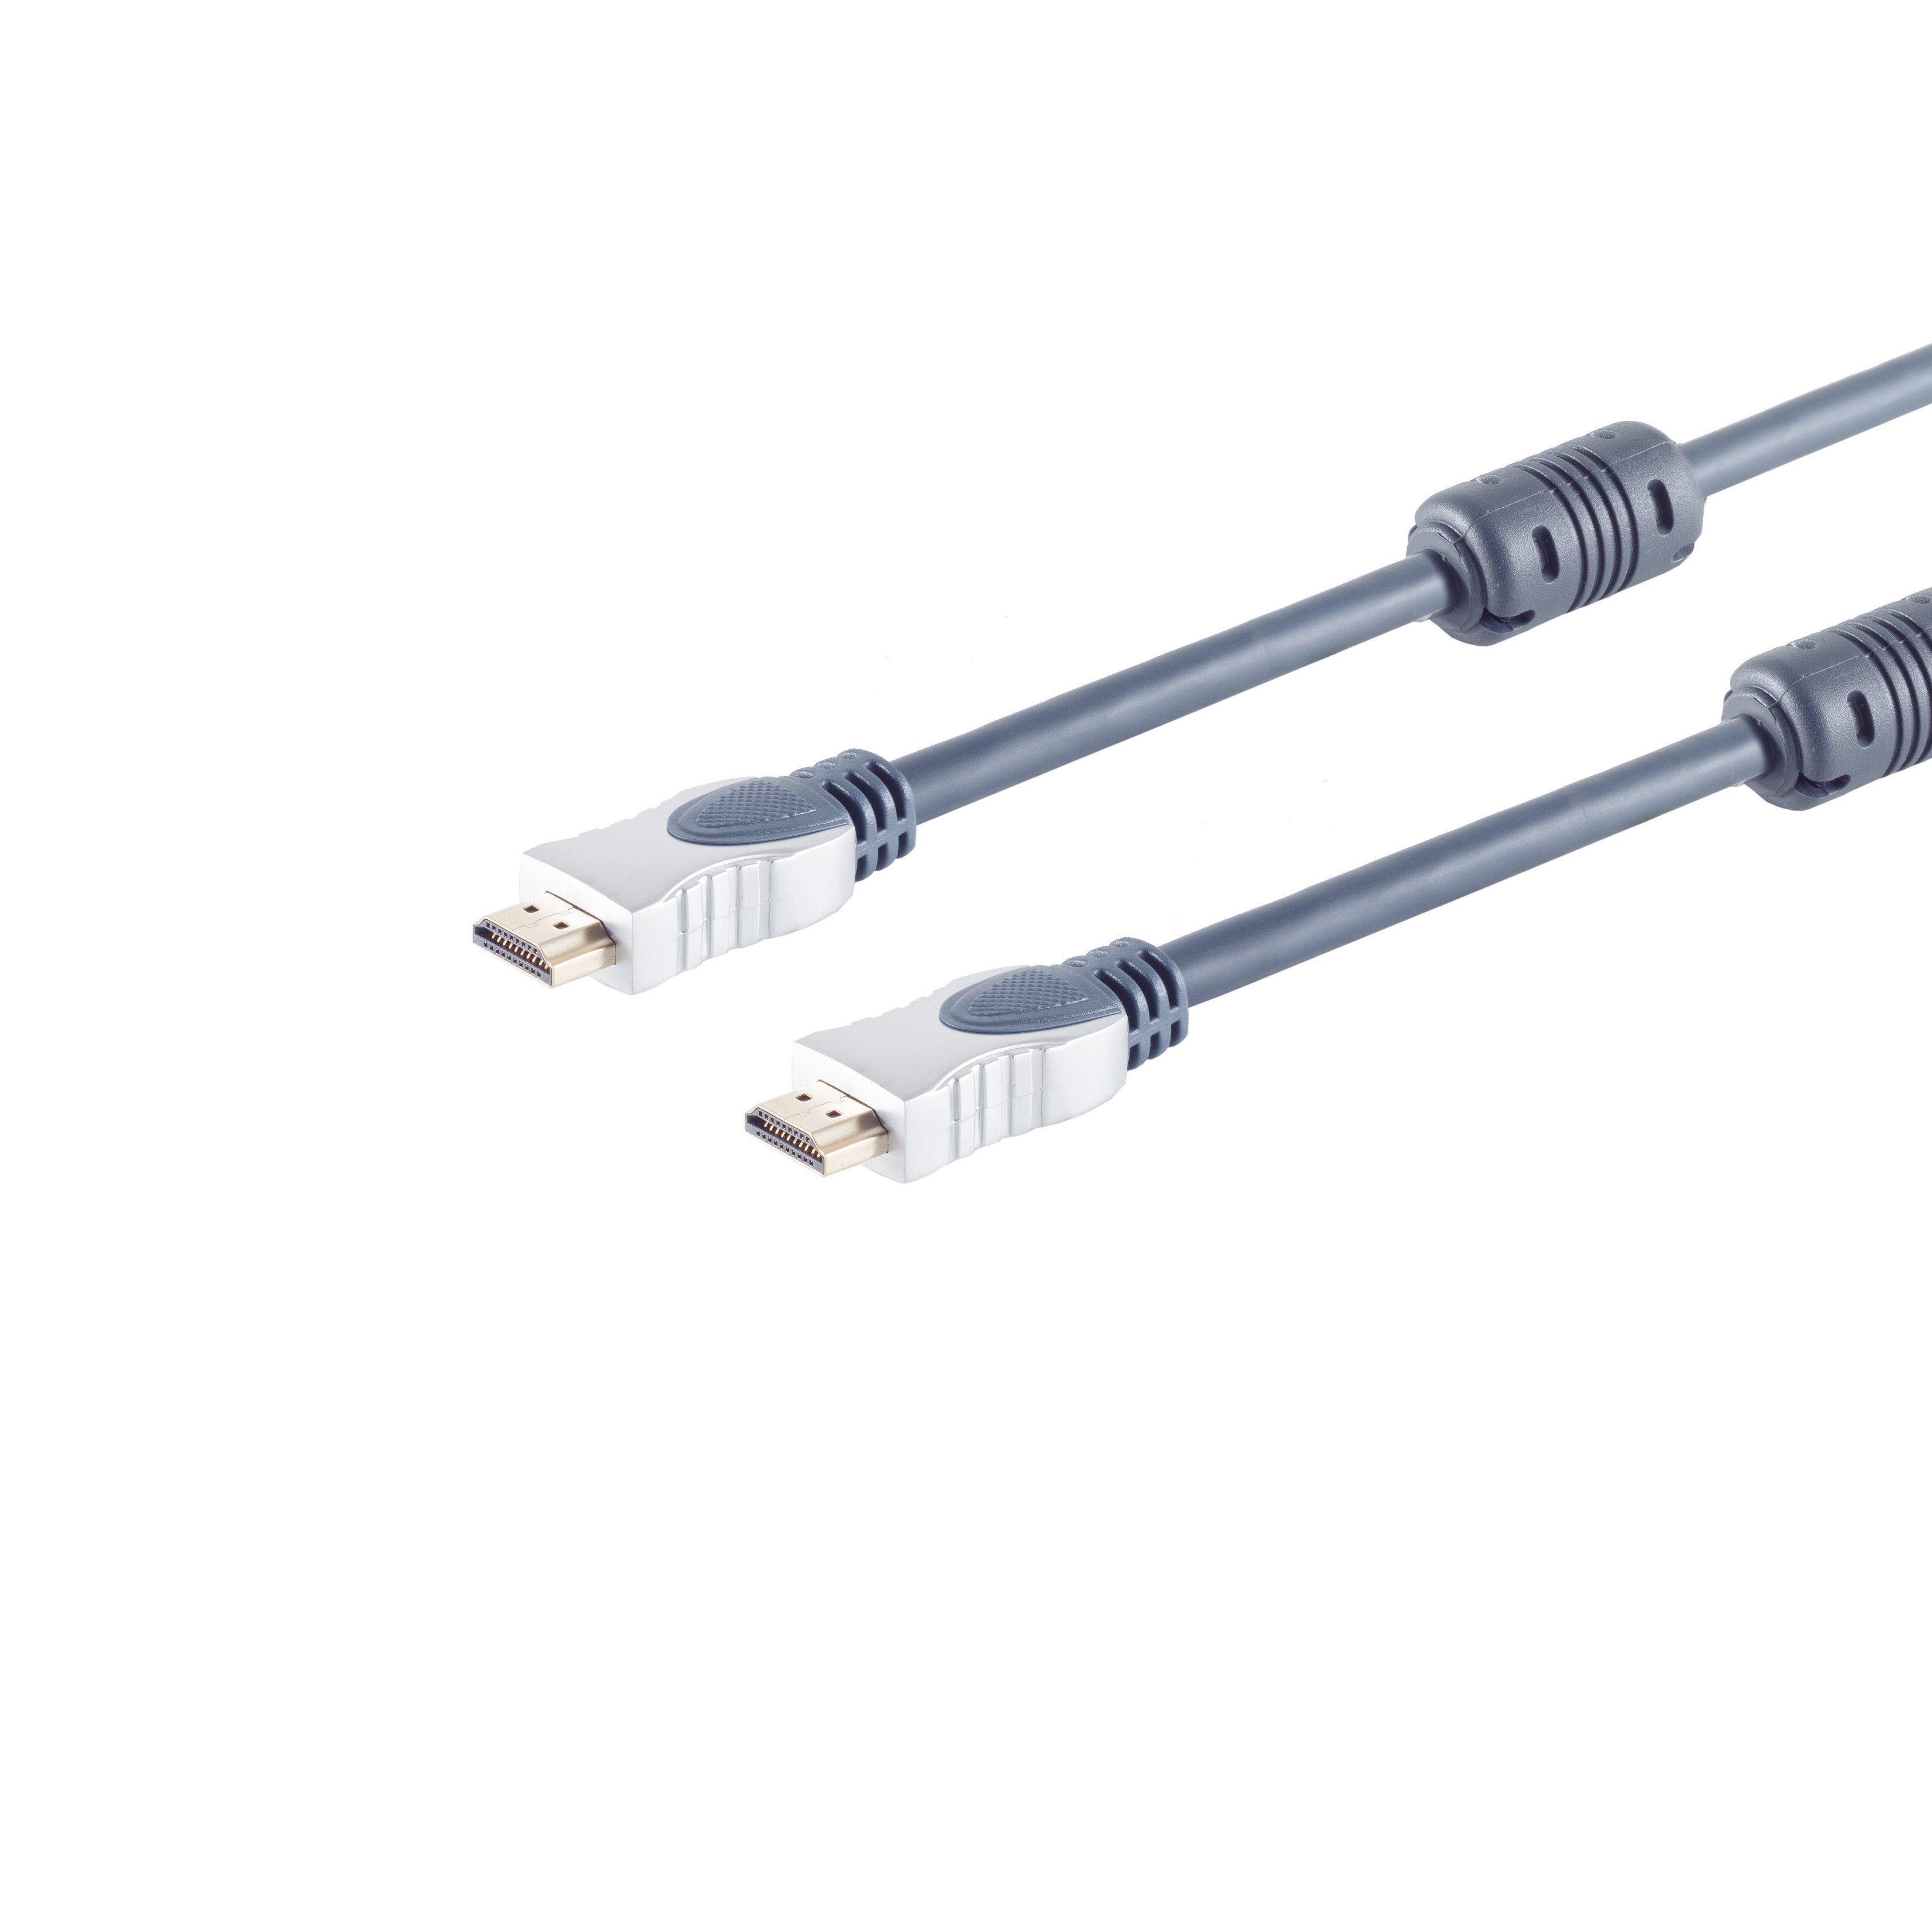 S/CONN MAXIMUM CONNECTIVITY Home-Cinema HDMI Kabel 1,5m Stecker, HDMI 2x